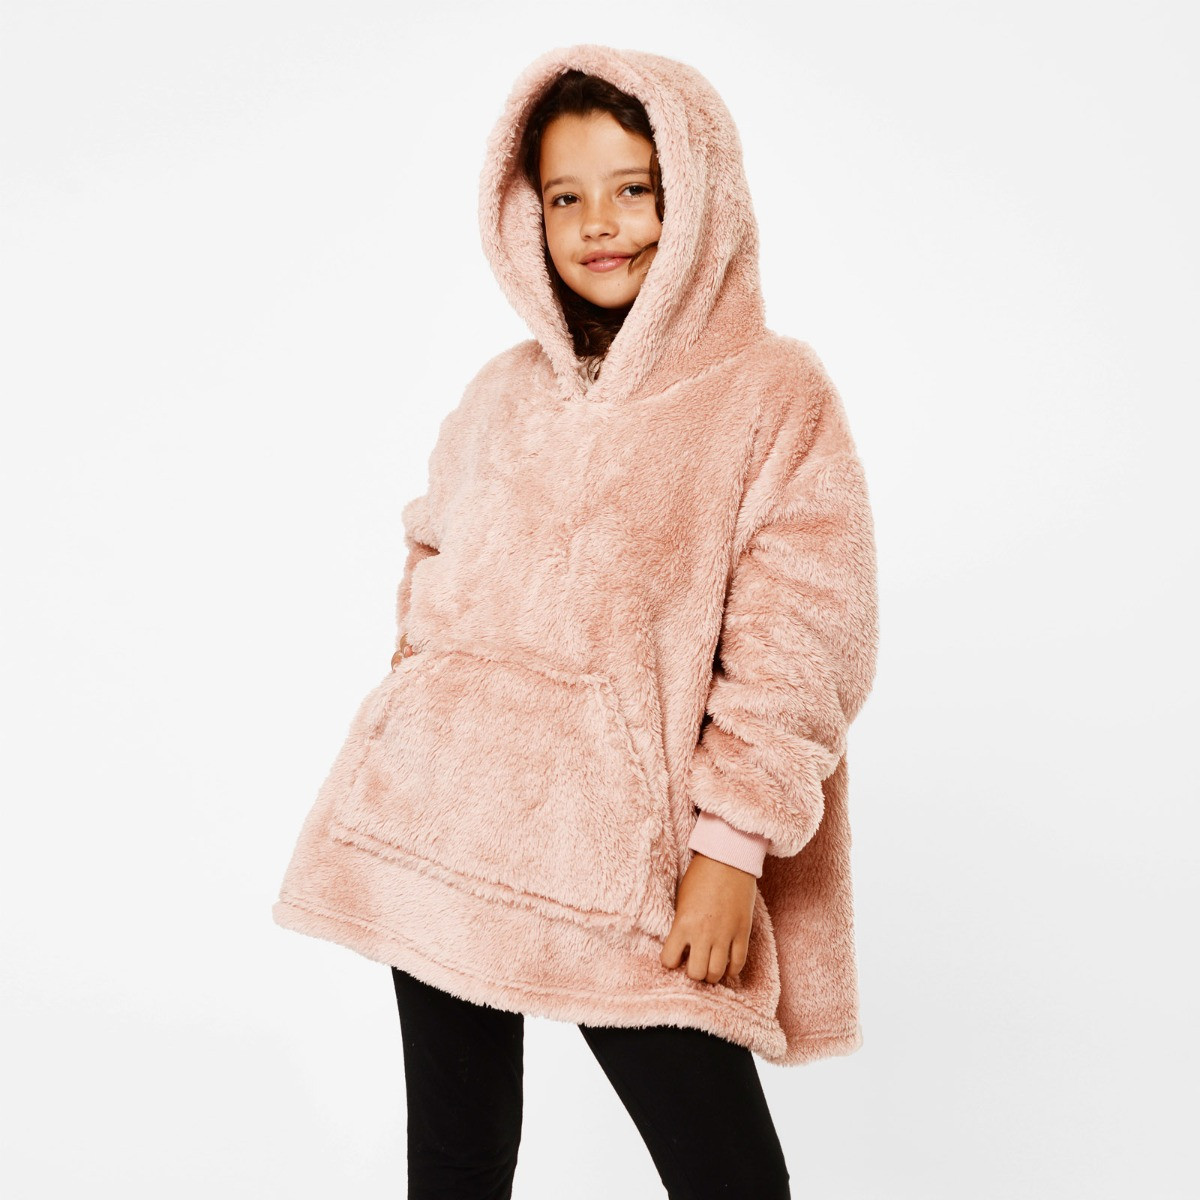 Brentfords Teddy Fleece Hoodie Blanket, Kids - Blush Pink>